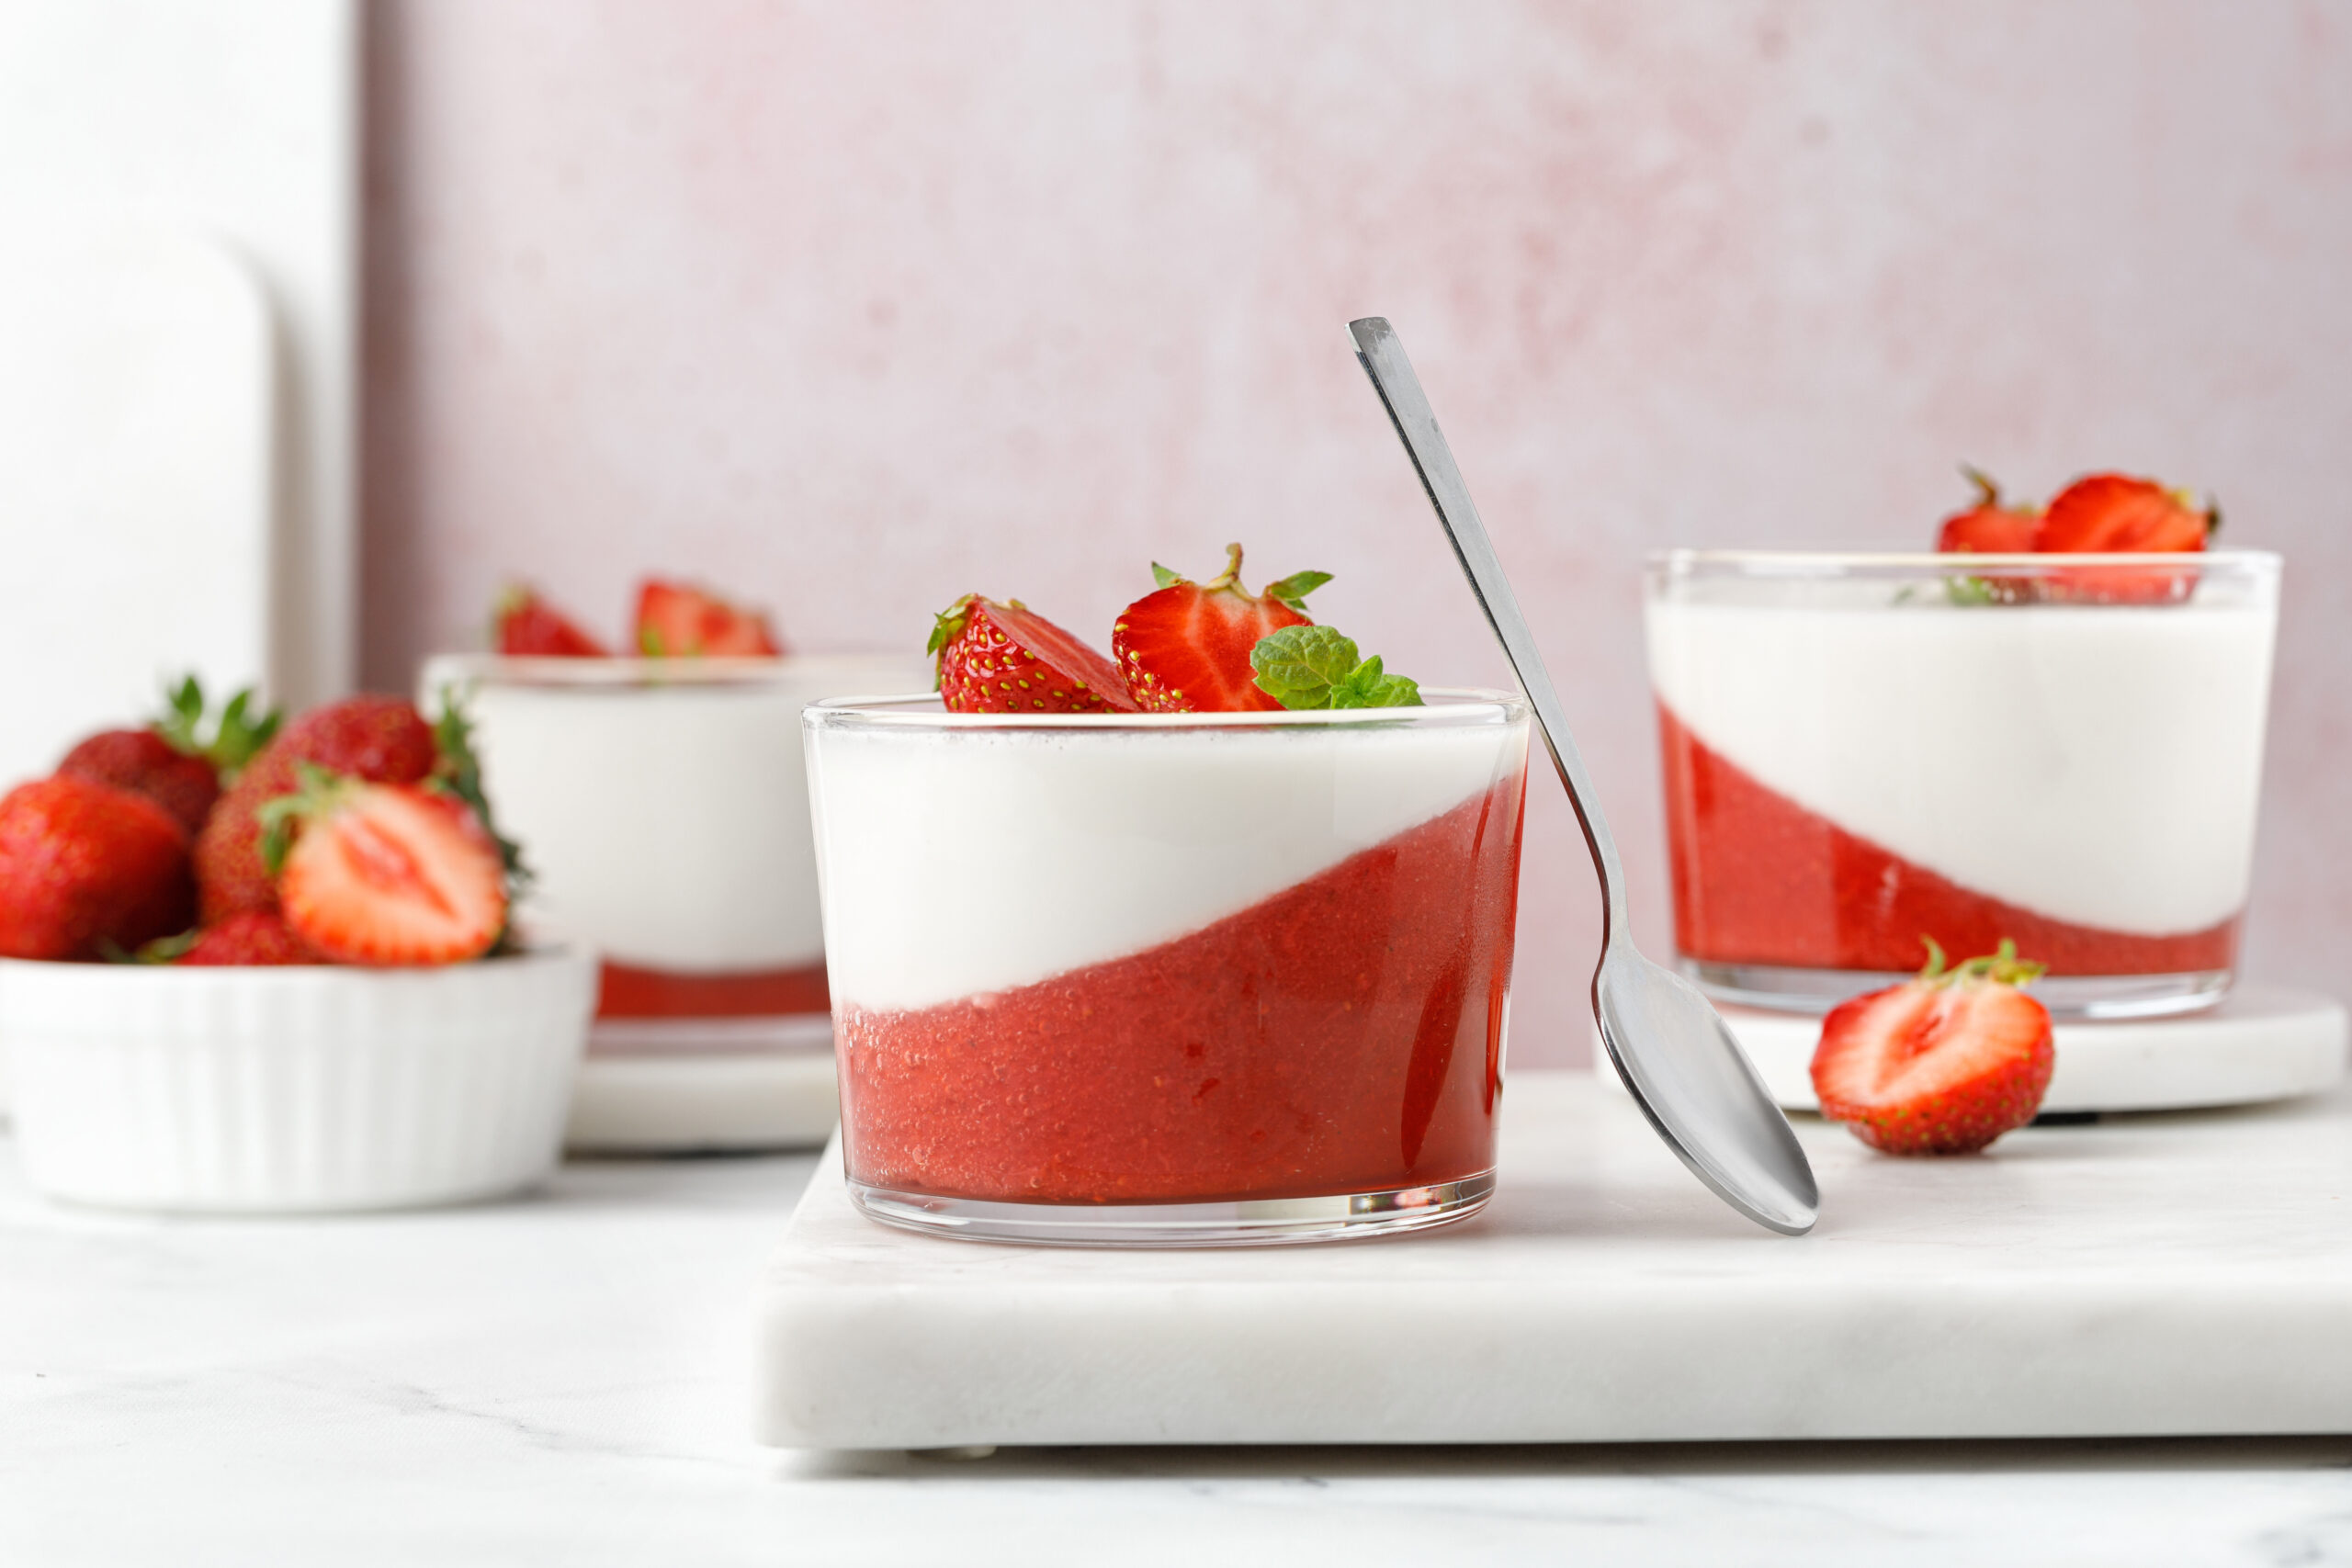 La confiture EXTRA de fraise permet de réaliser facilement des panna cotta. Elle sert aussi pour parfumer les yaourts ou les verrines.